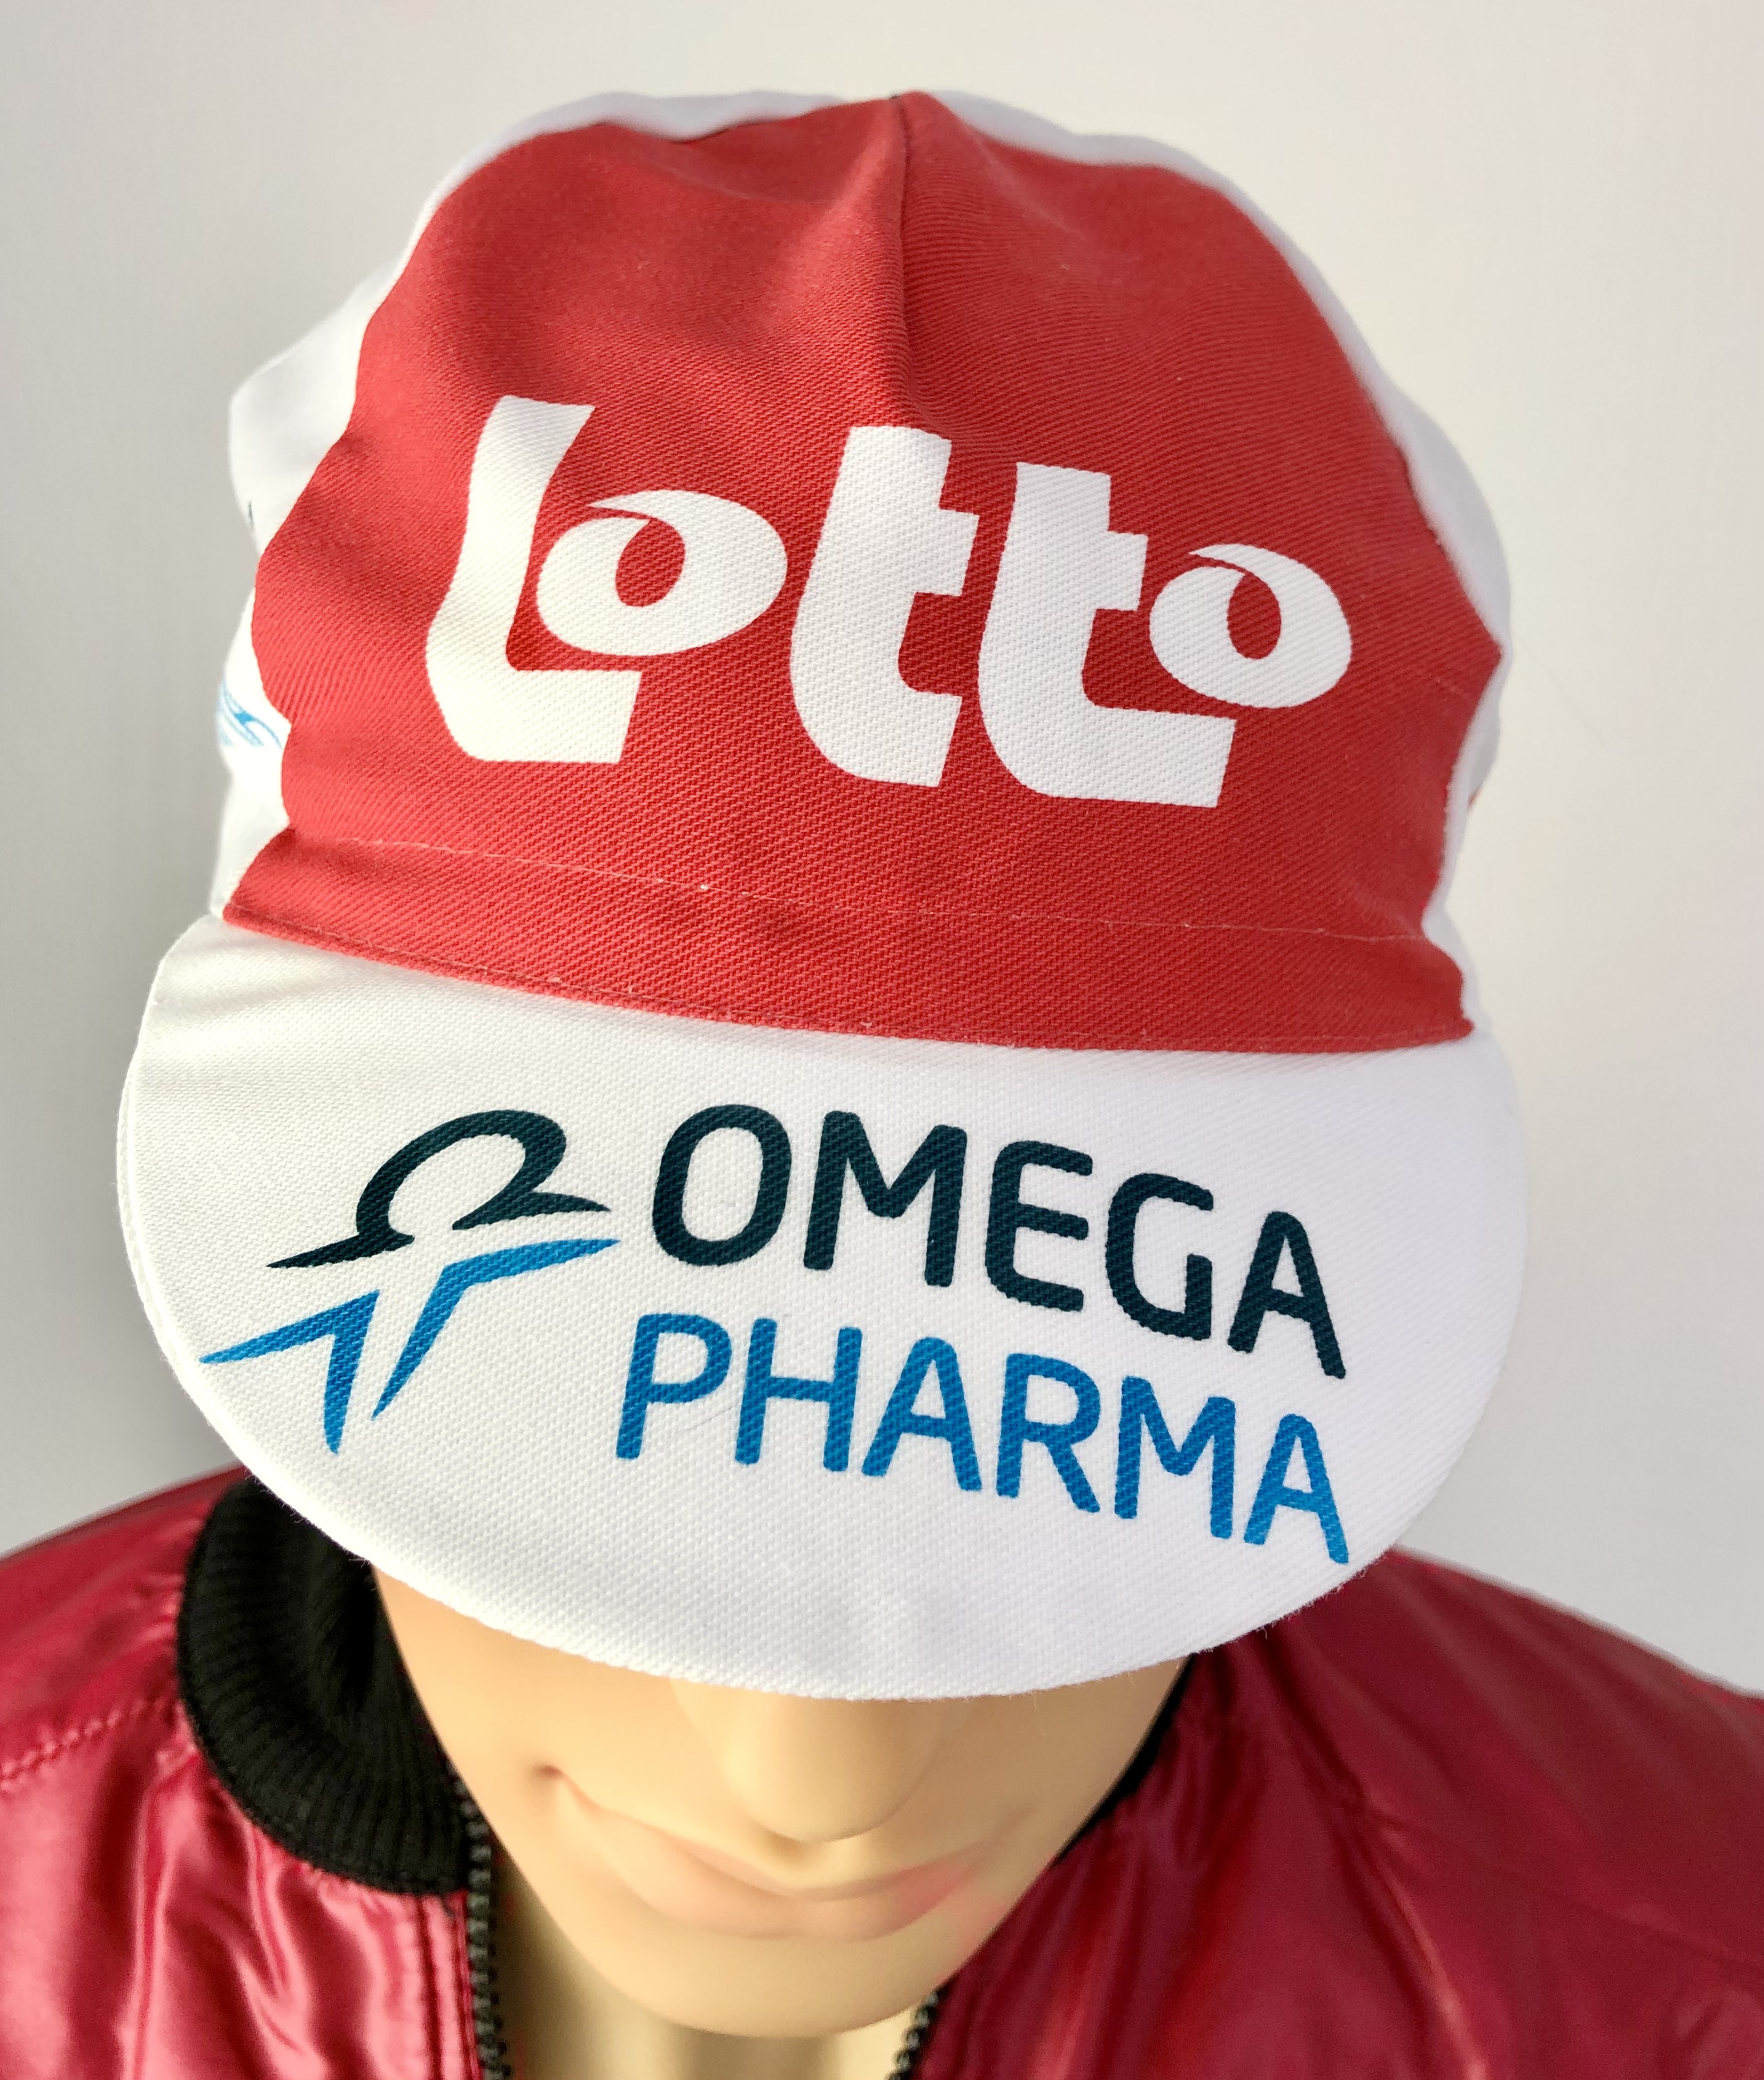 La Casquette Team   Lotto Omega